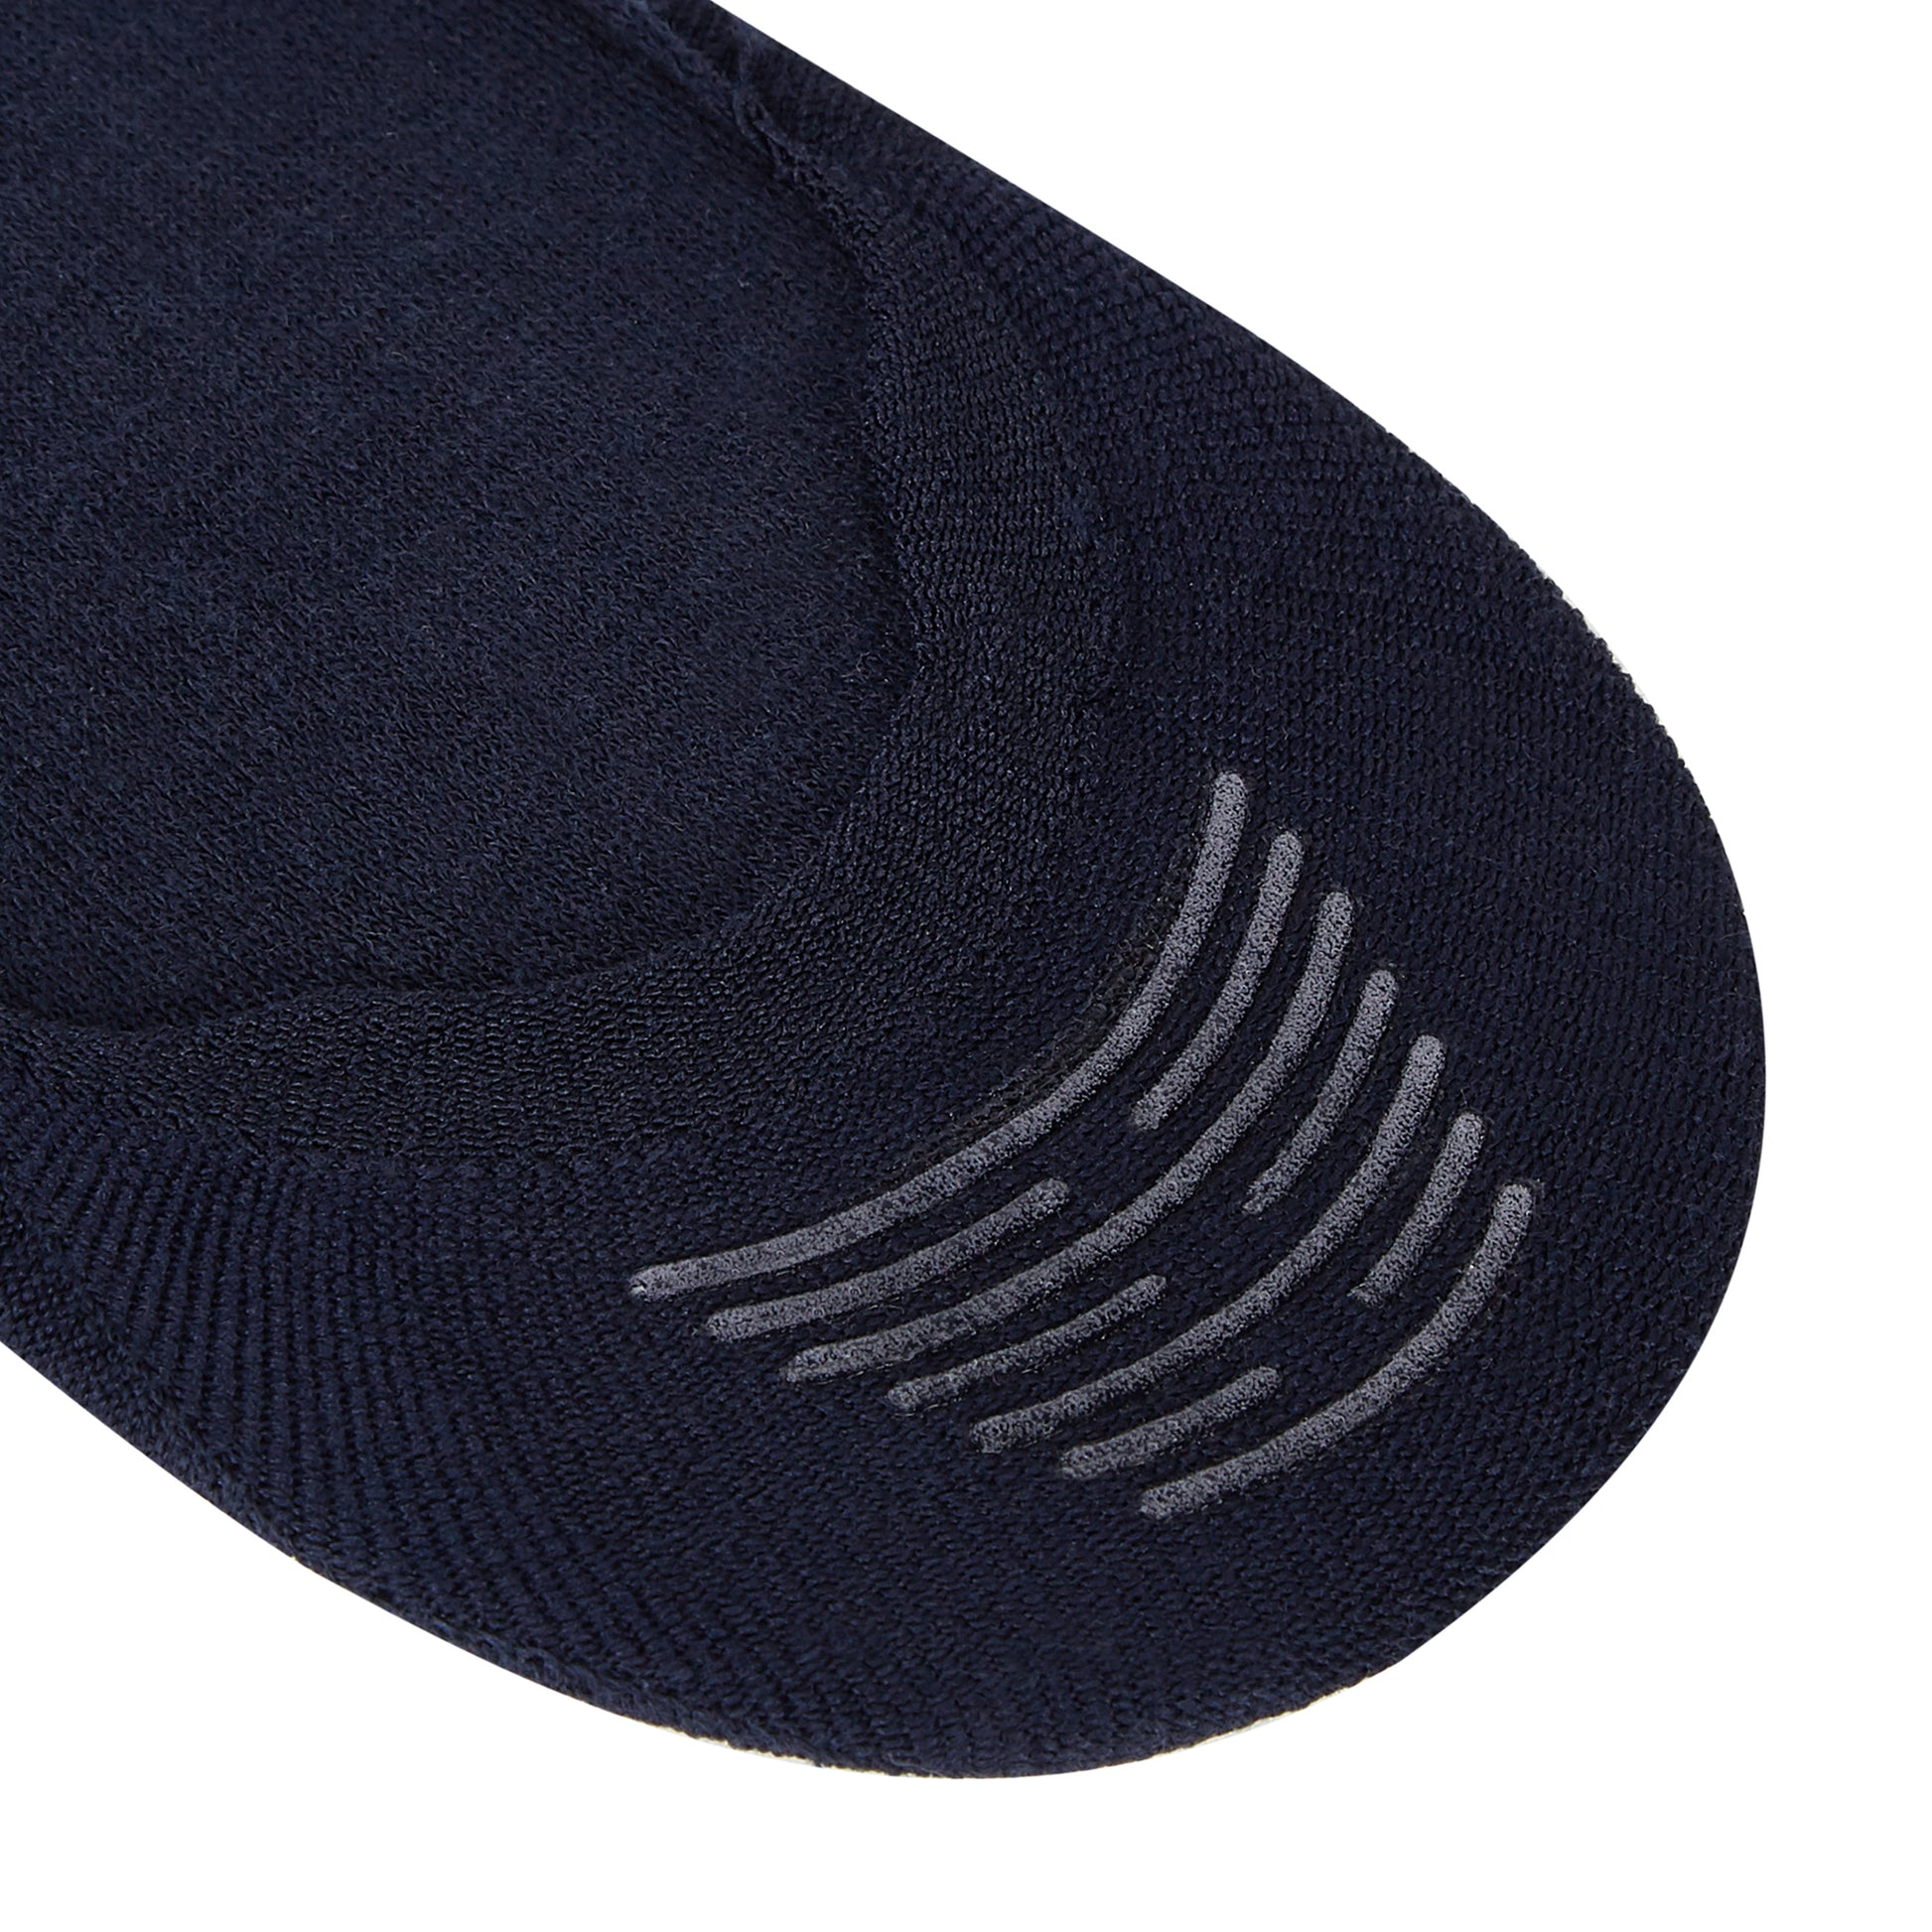 Men's Two-Tone Colored Striped Invisible Boat Socks - IDENTITY Apparel Shop